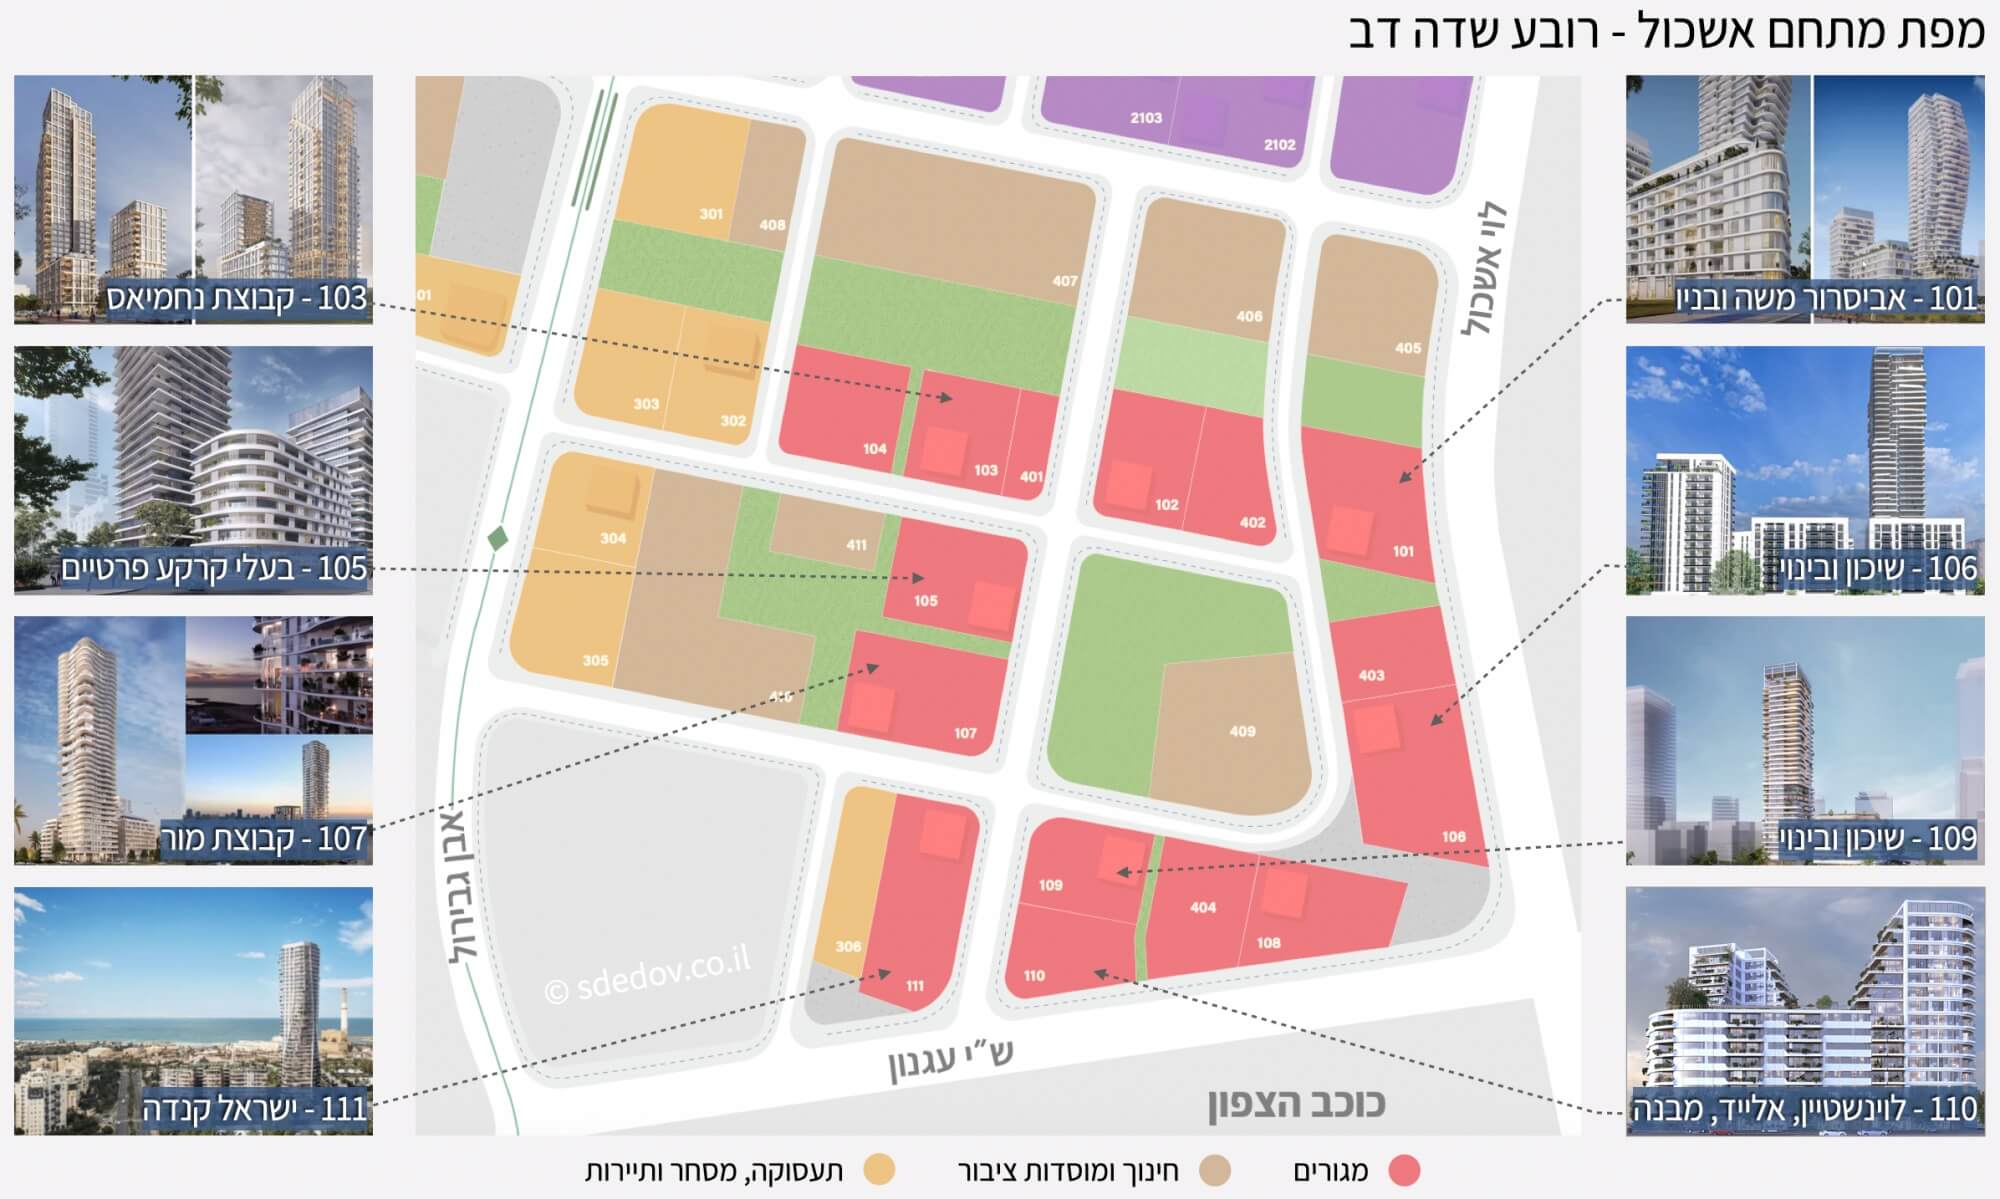 מפת פרוייקטים מתחם אשכול - שדה דב תל אביב